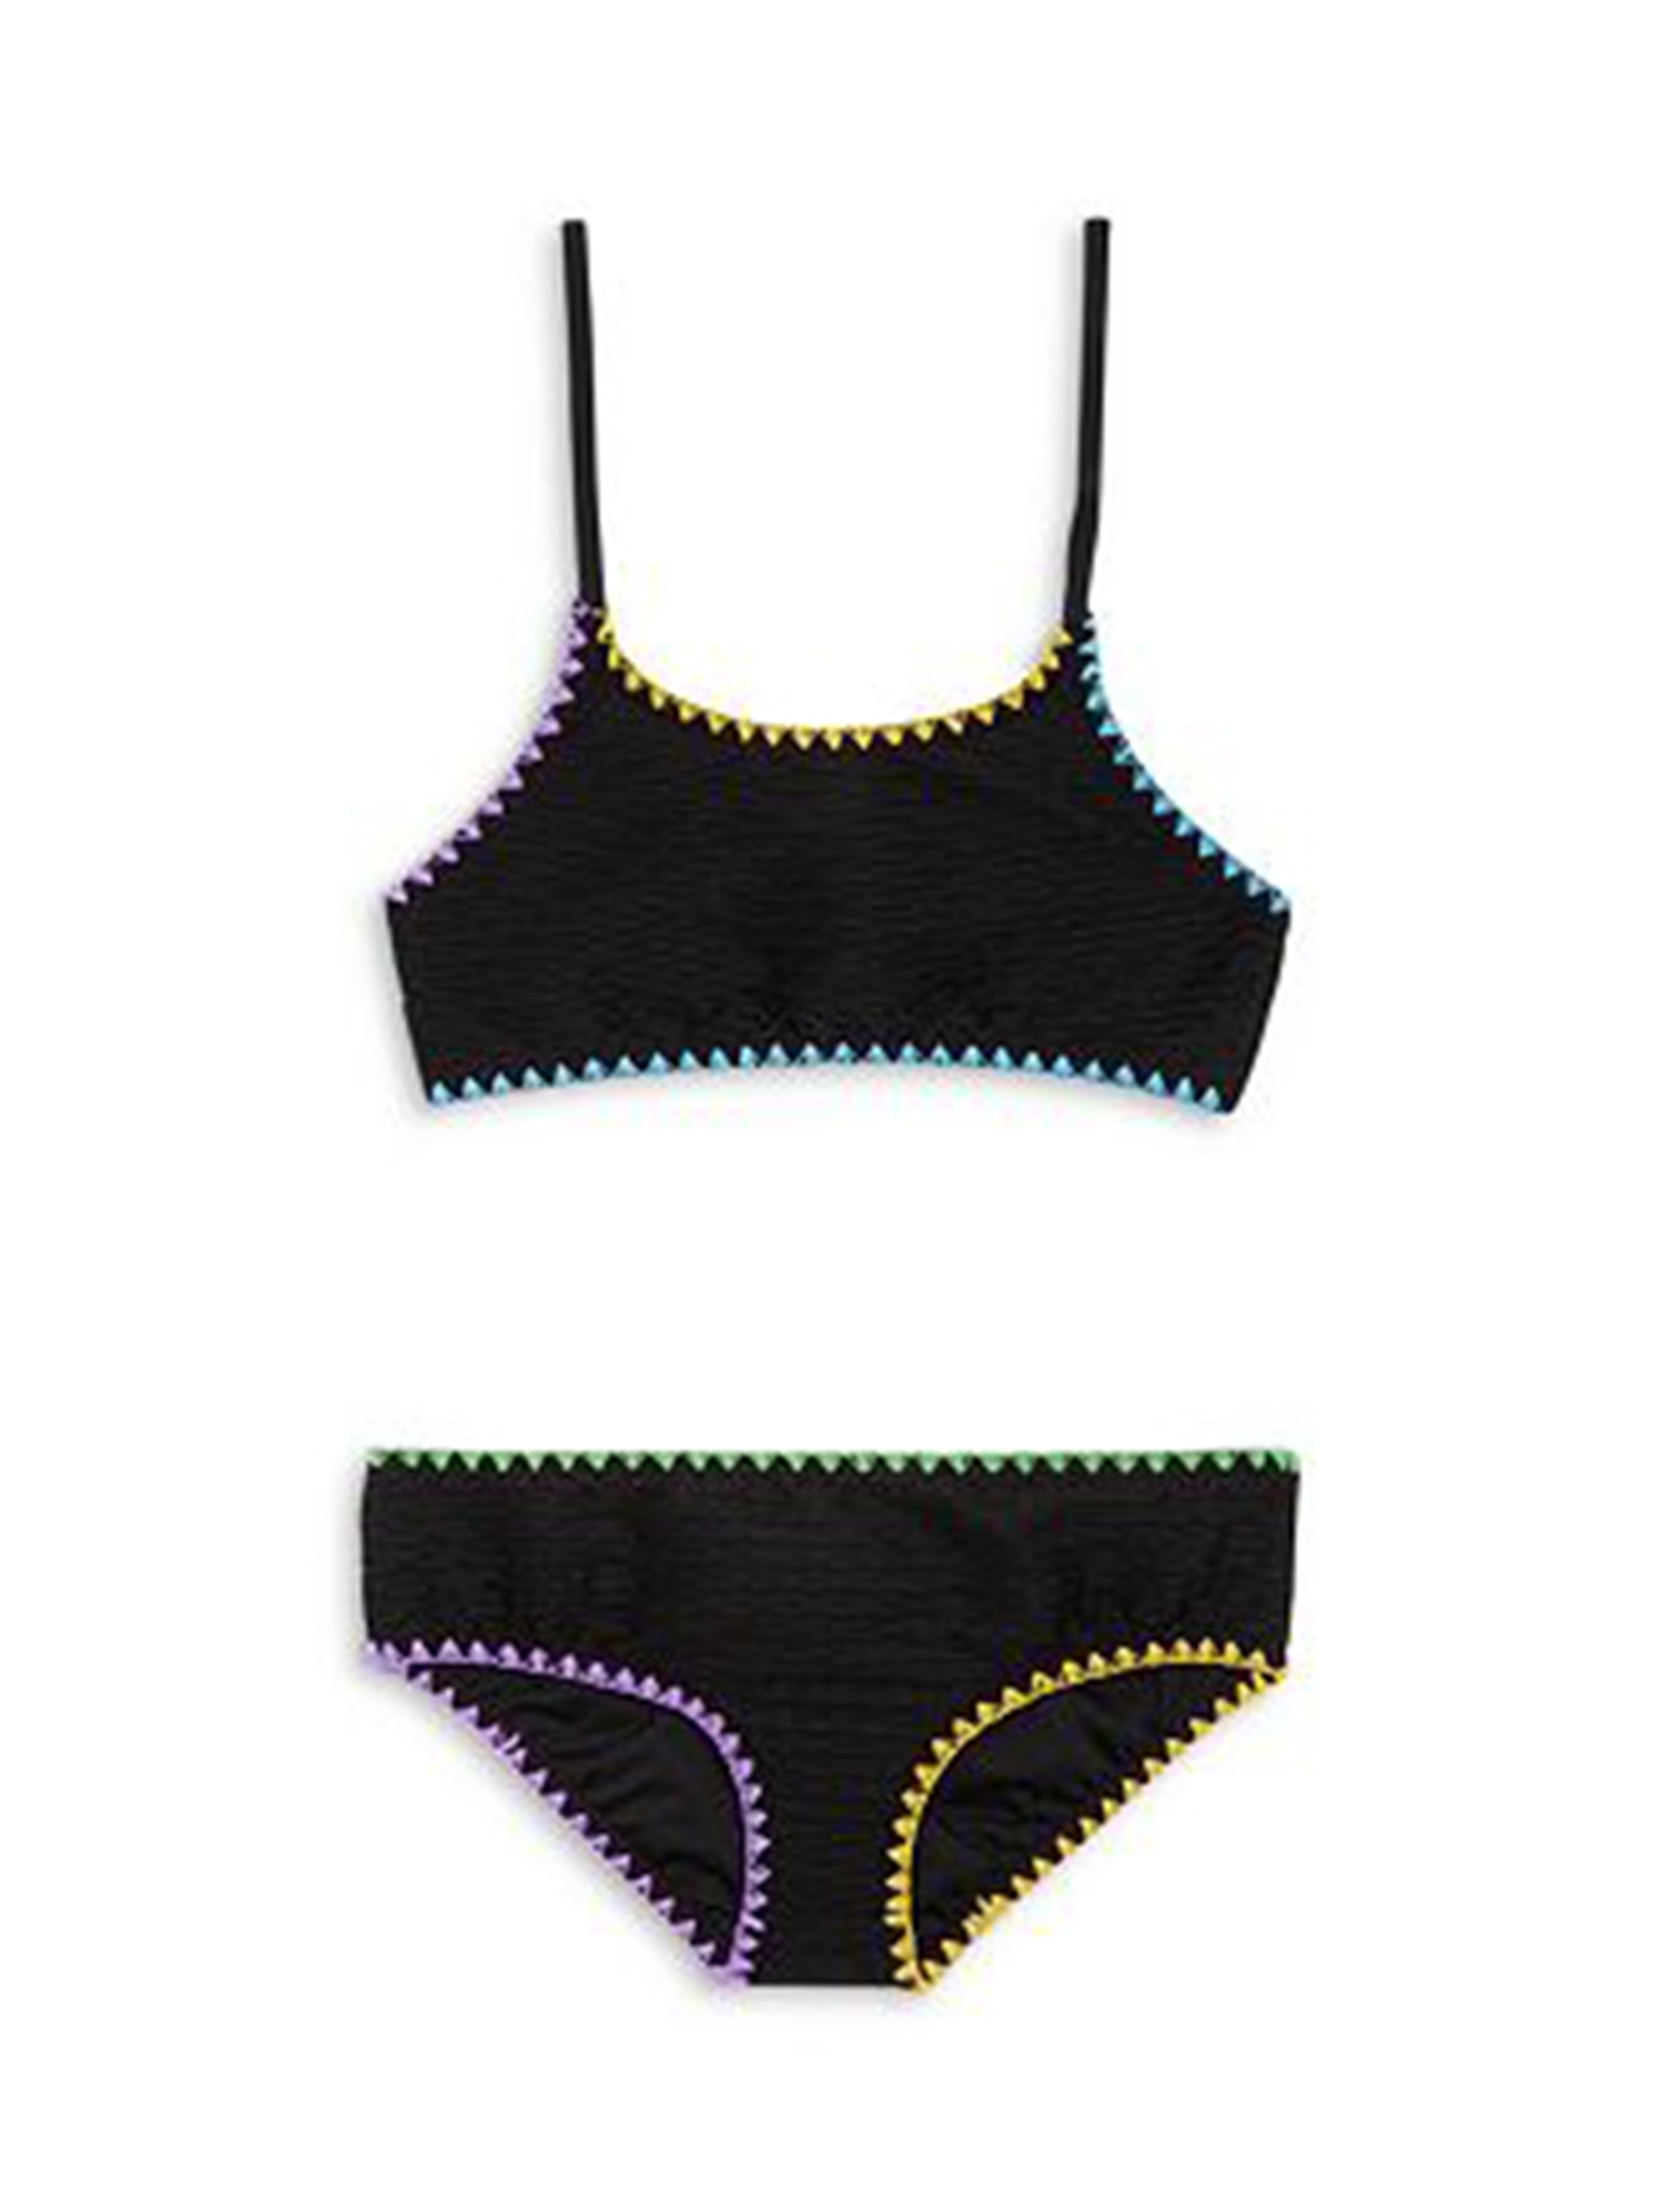 MEJIA - Embroidered Textured Black Bikini | Limeapple